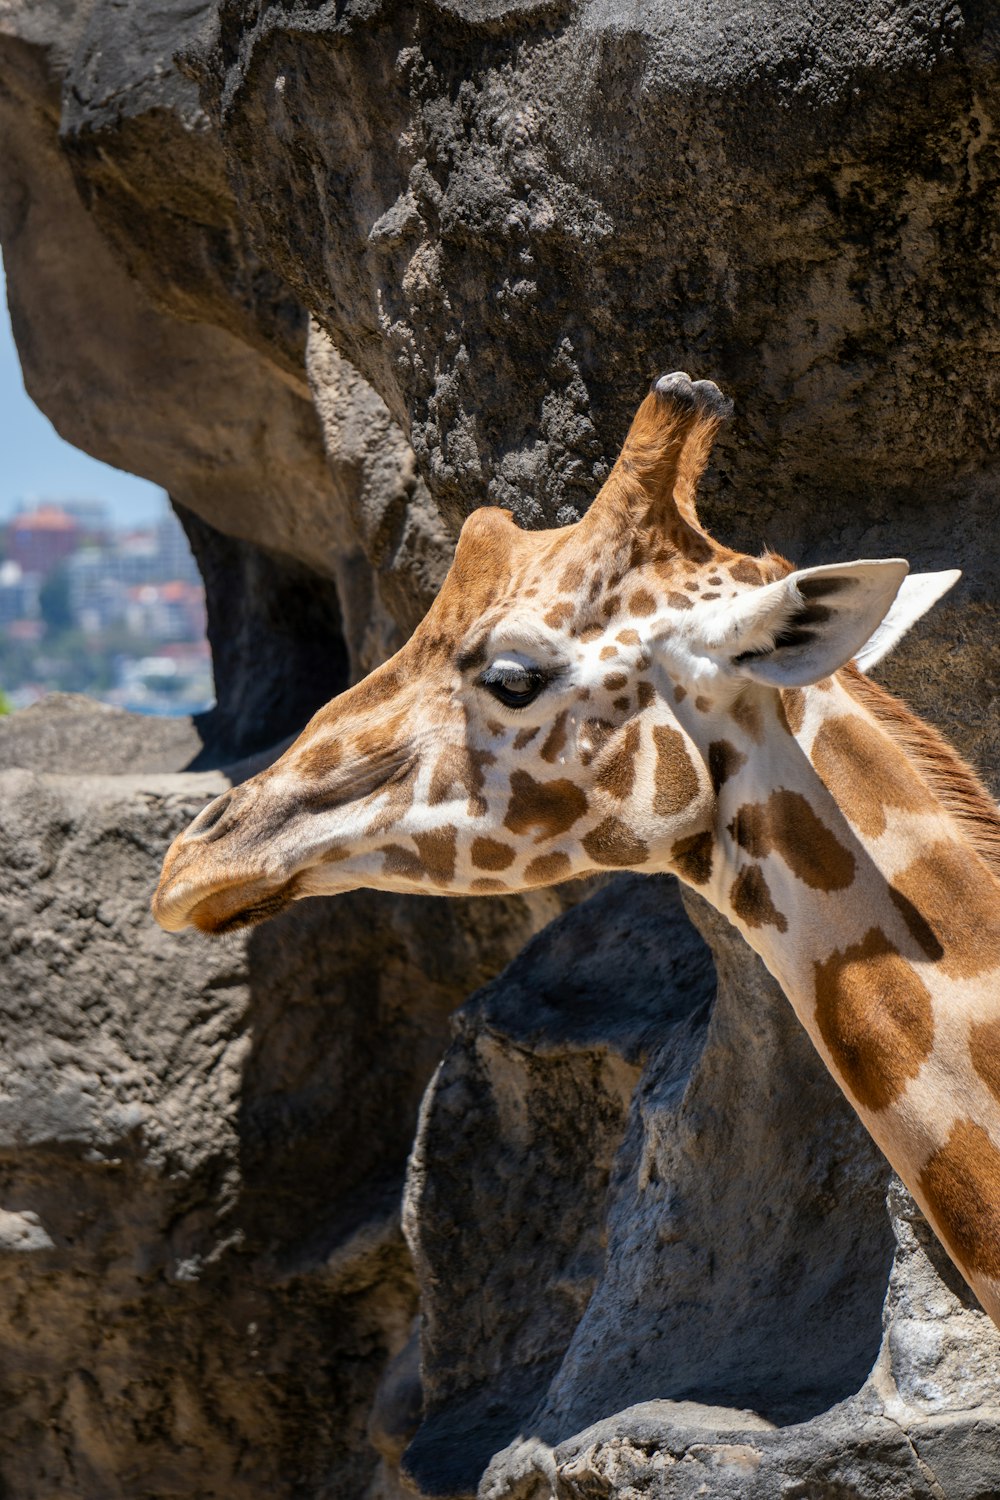 a close up of a giraffe near a rock wall